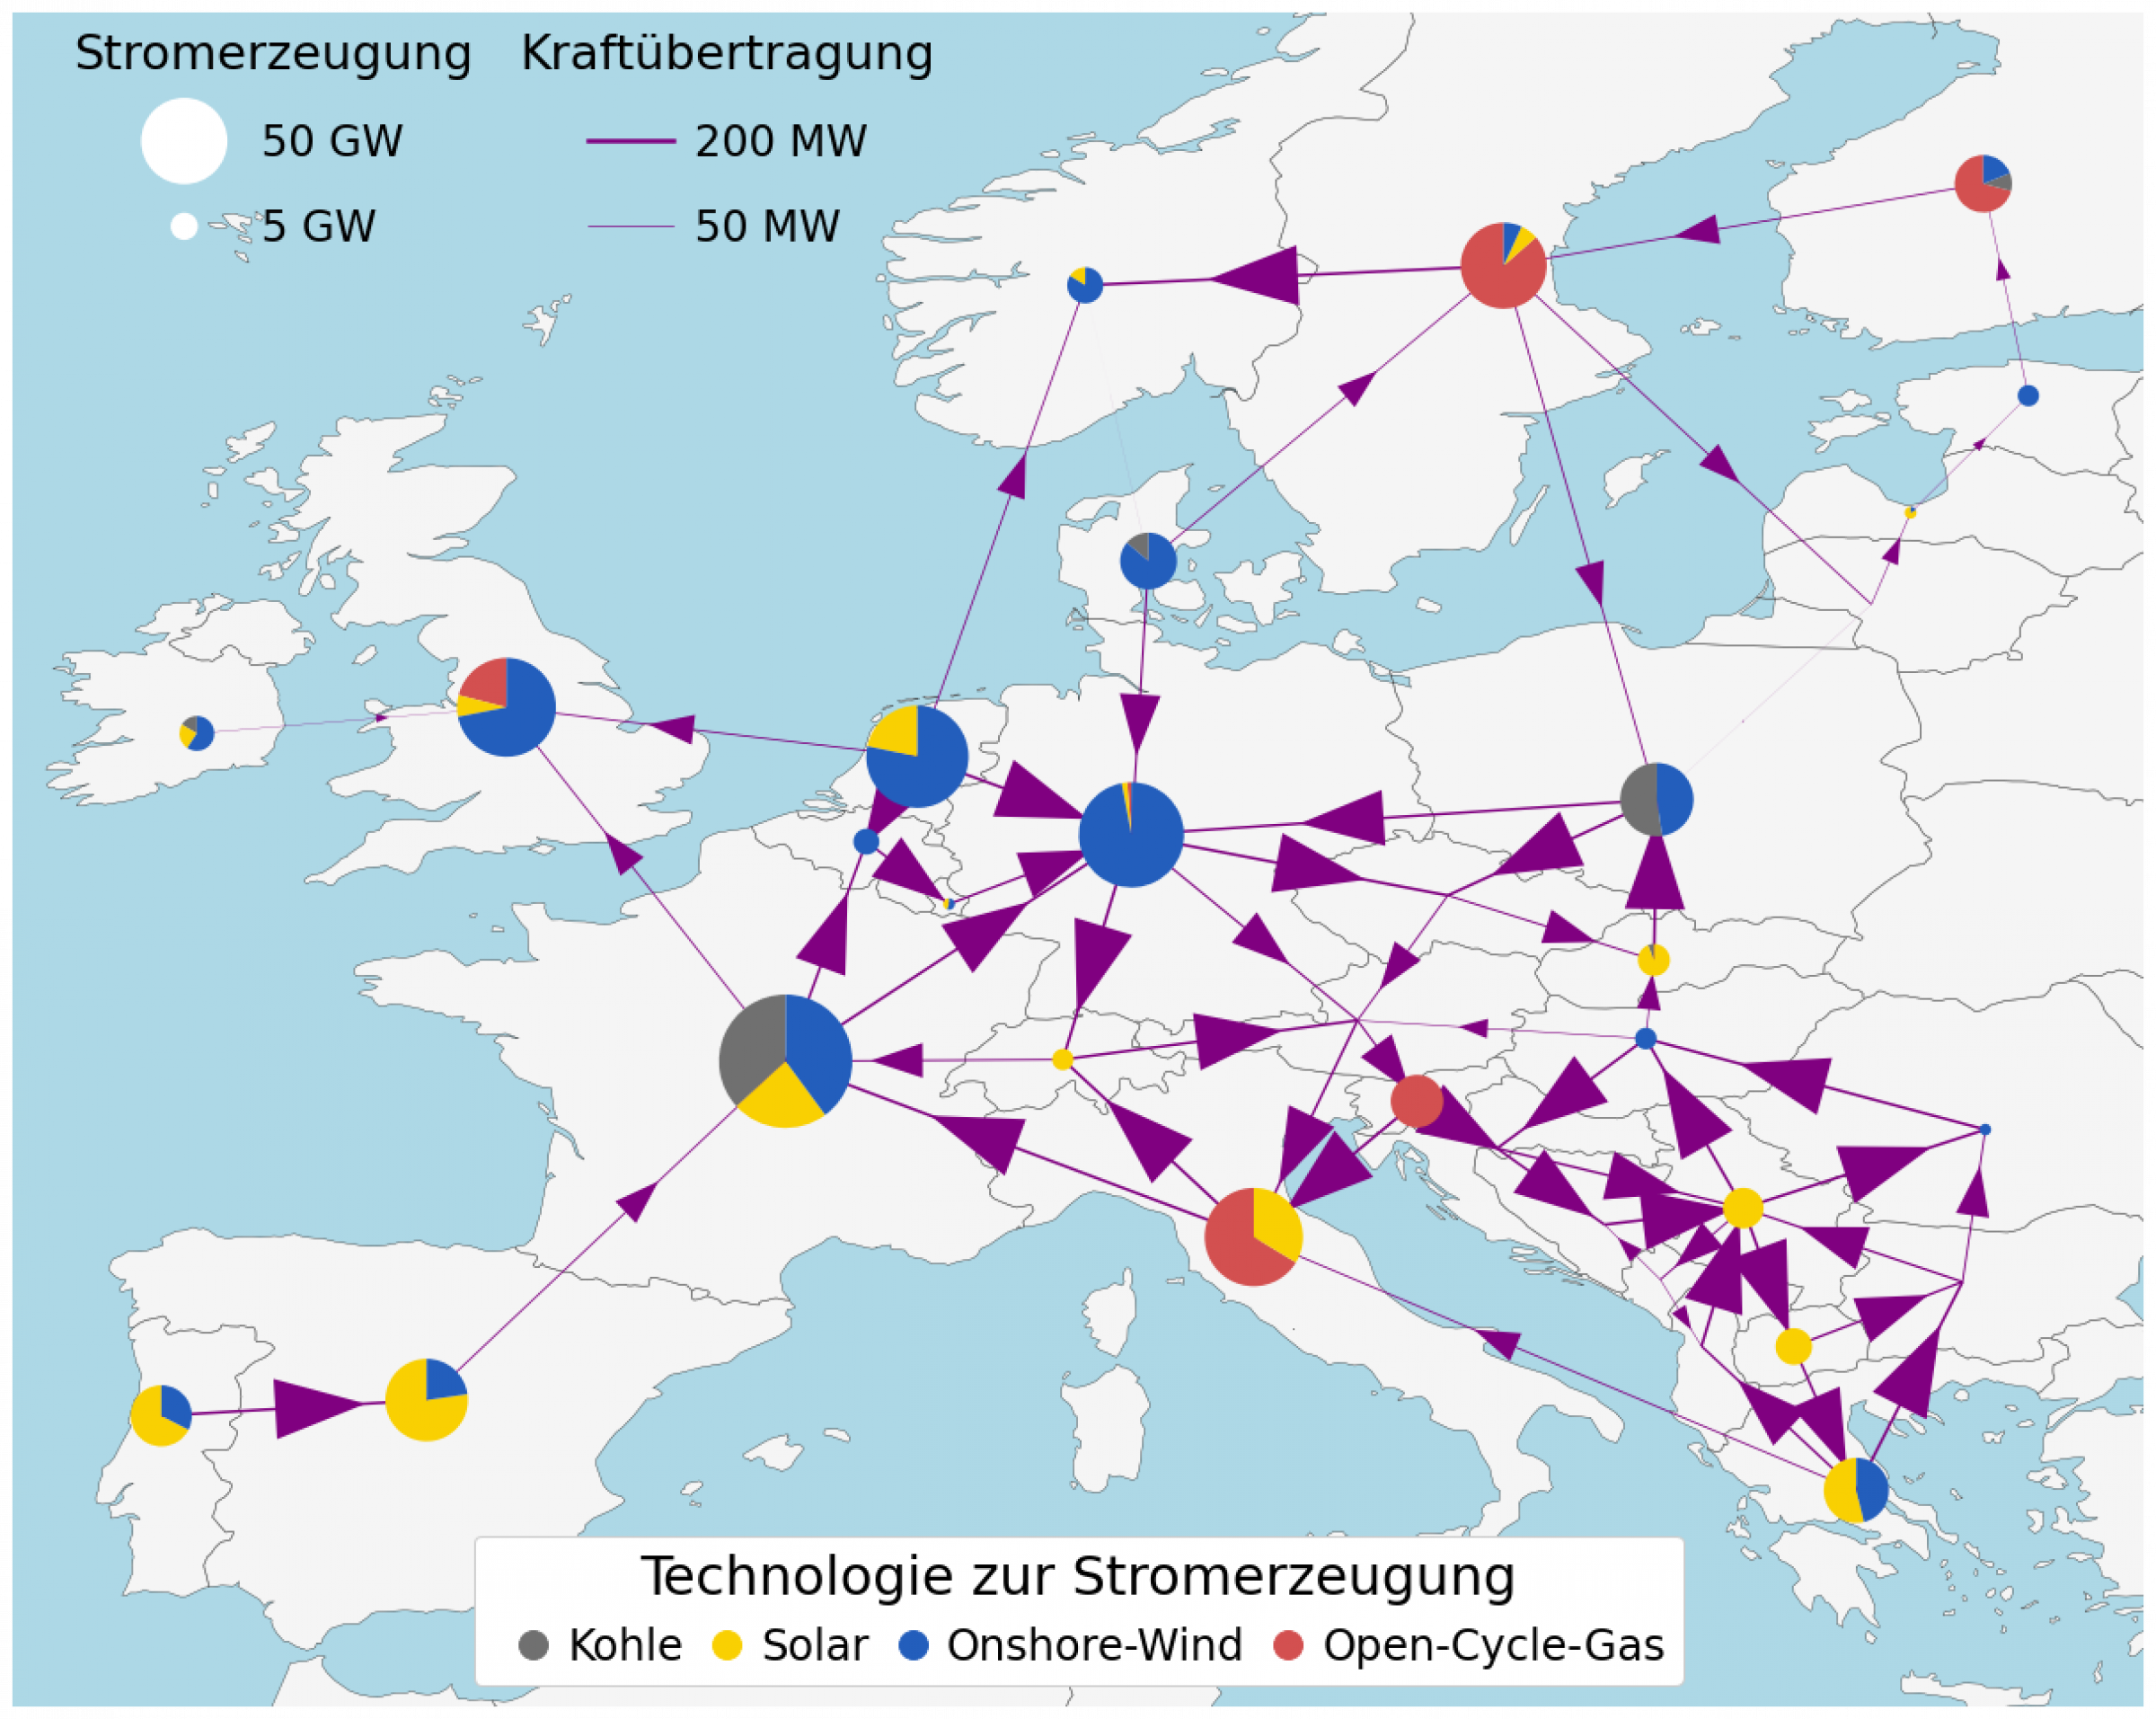  Stromerzeugung und -übertragung im europäischen Stromnetzmodell mit 33 Verteilungsknoten. (Chen Li).